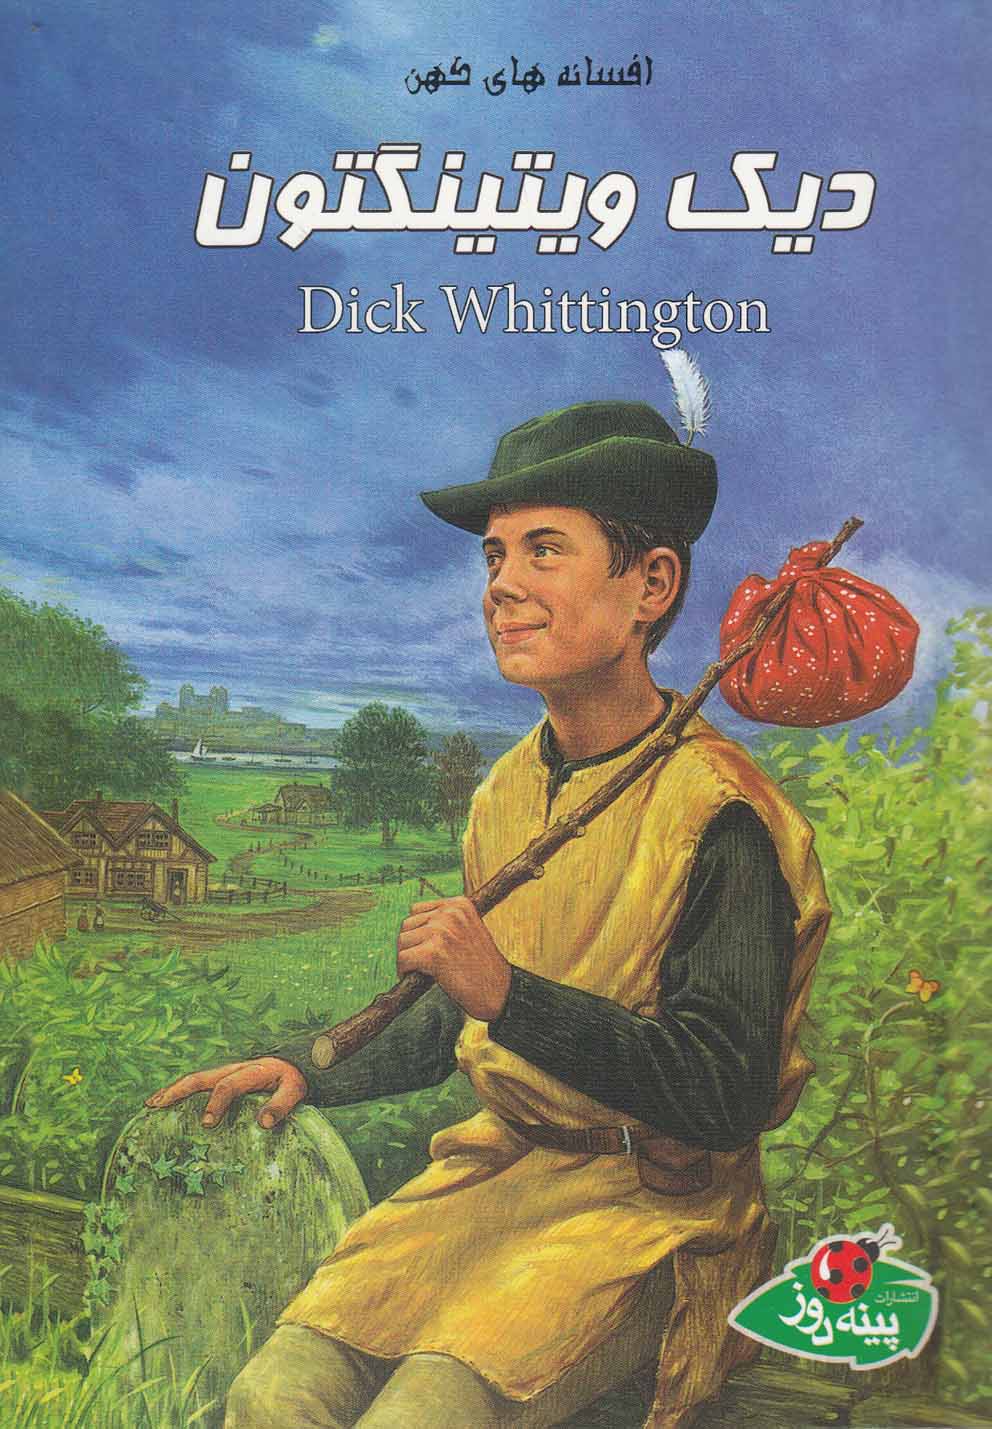  کتاب دیک ویتینگتون